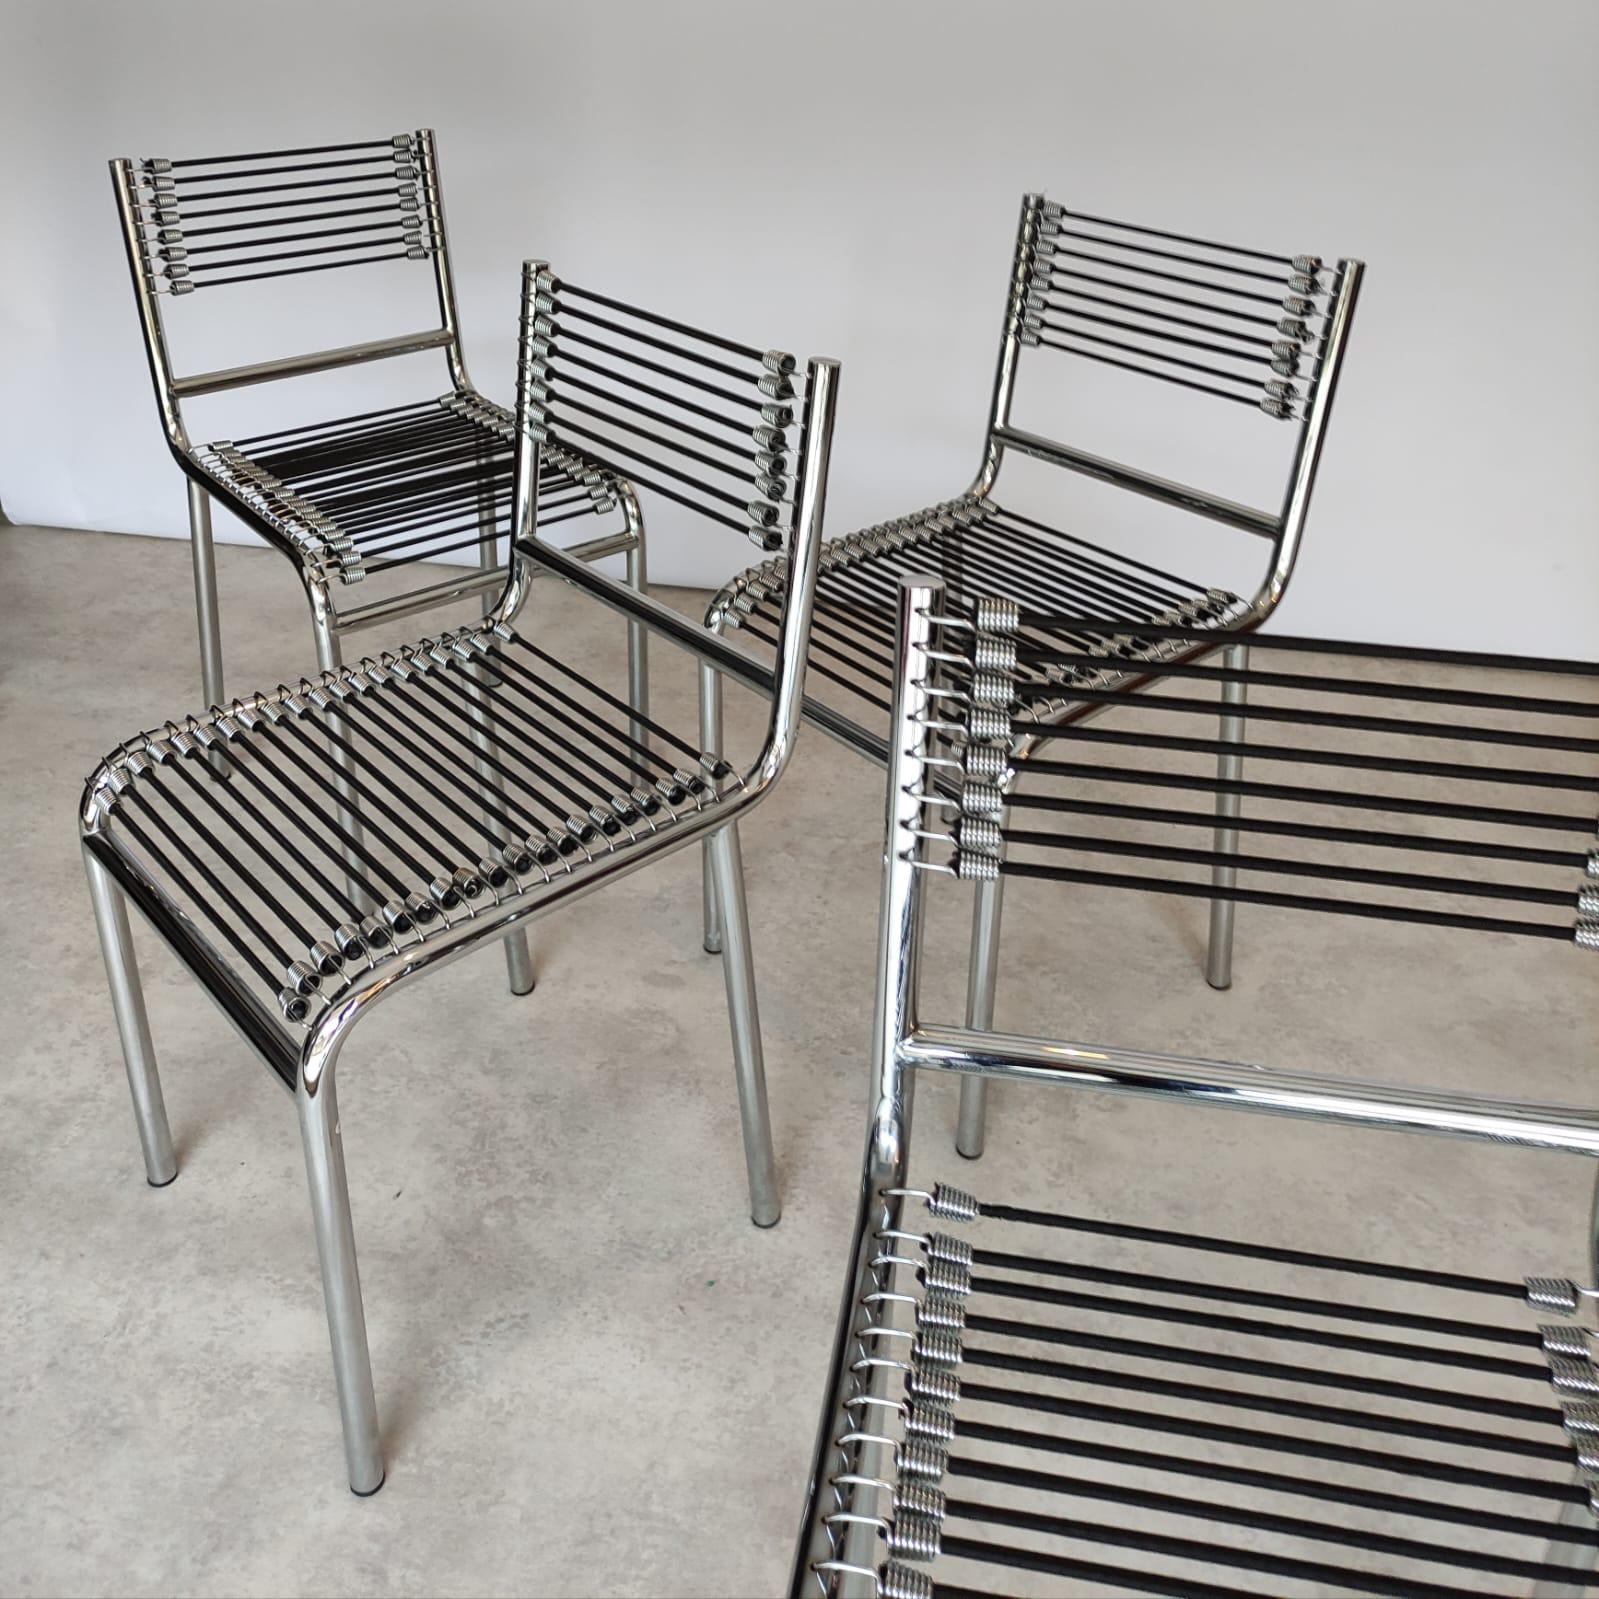 René Herbst était un designer industriel français et l'un des pionniers du design de meubles modernes. Conçu dans les années 1920, Herbst a créé une série de chaises innovantes produites pour Formes Nouvelles dans les années 1960, connues sous le